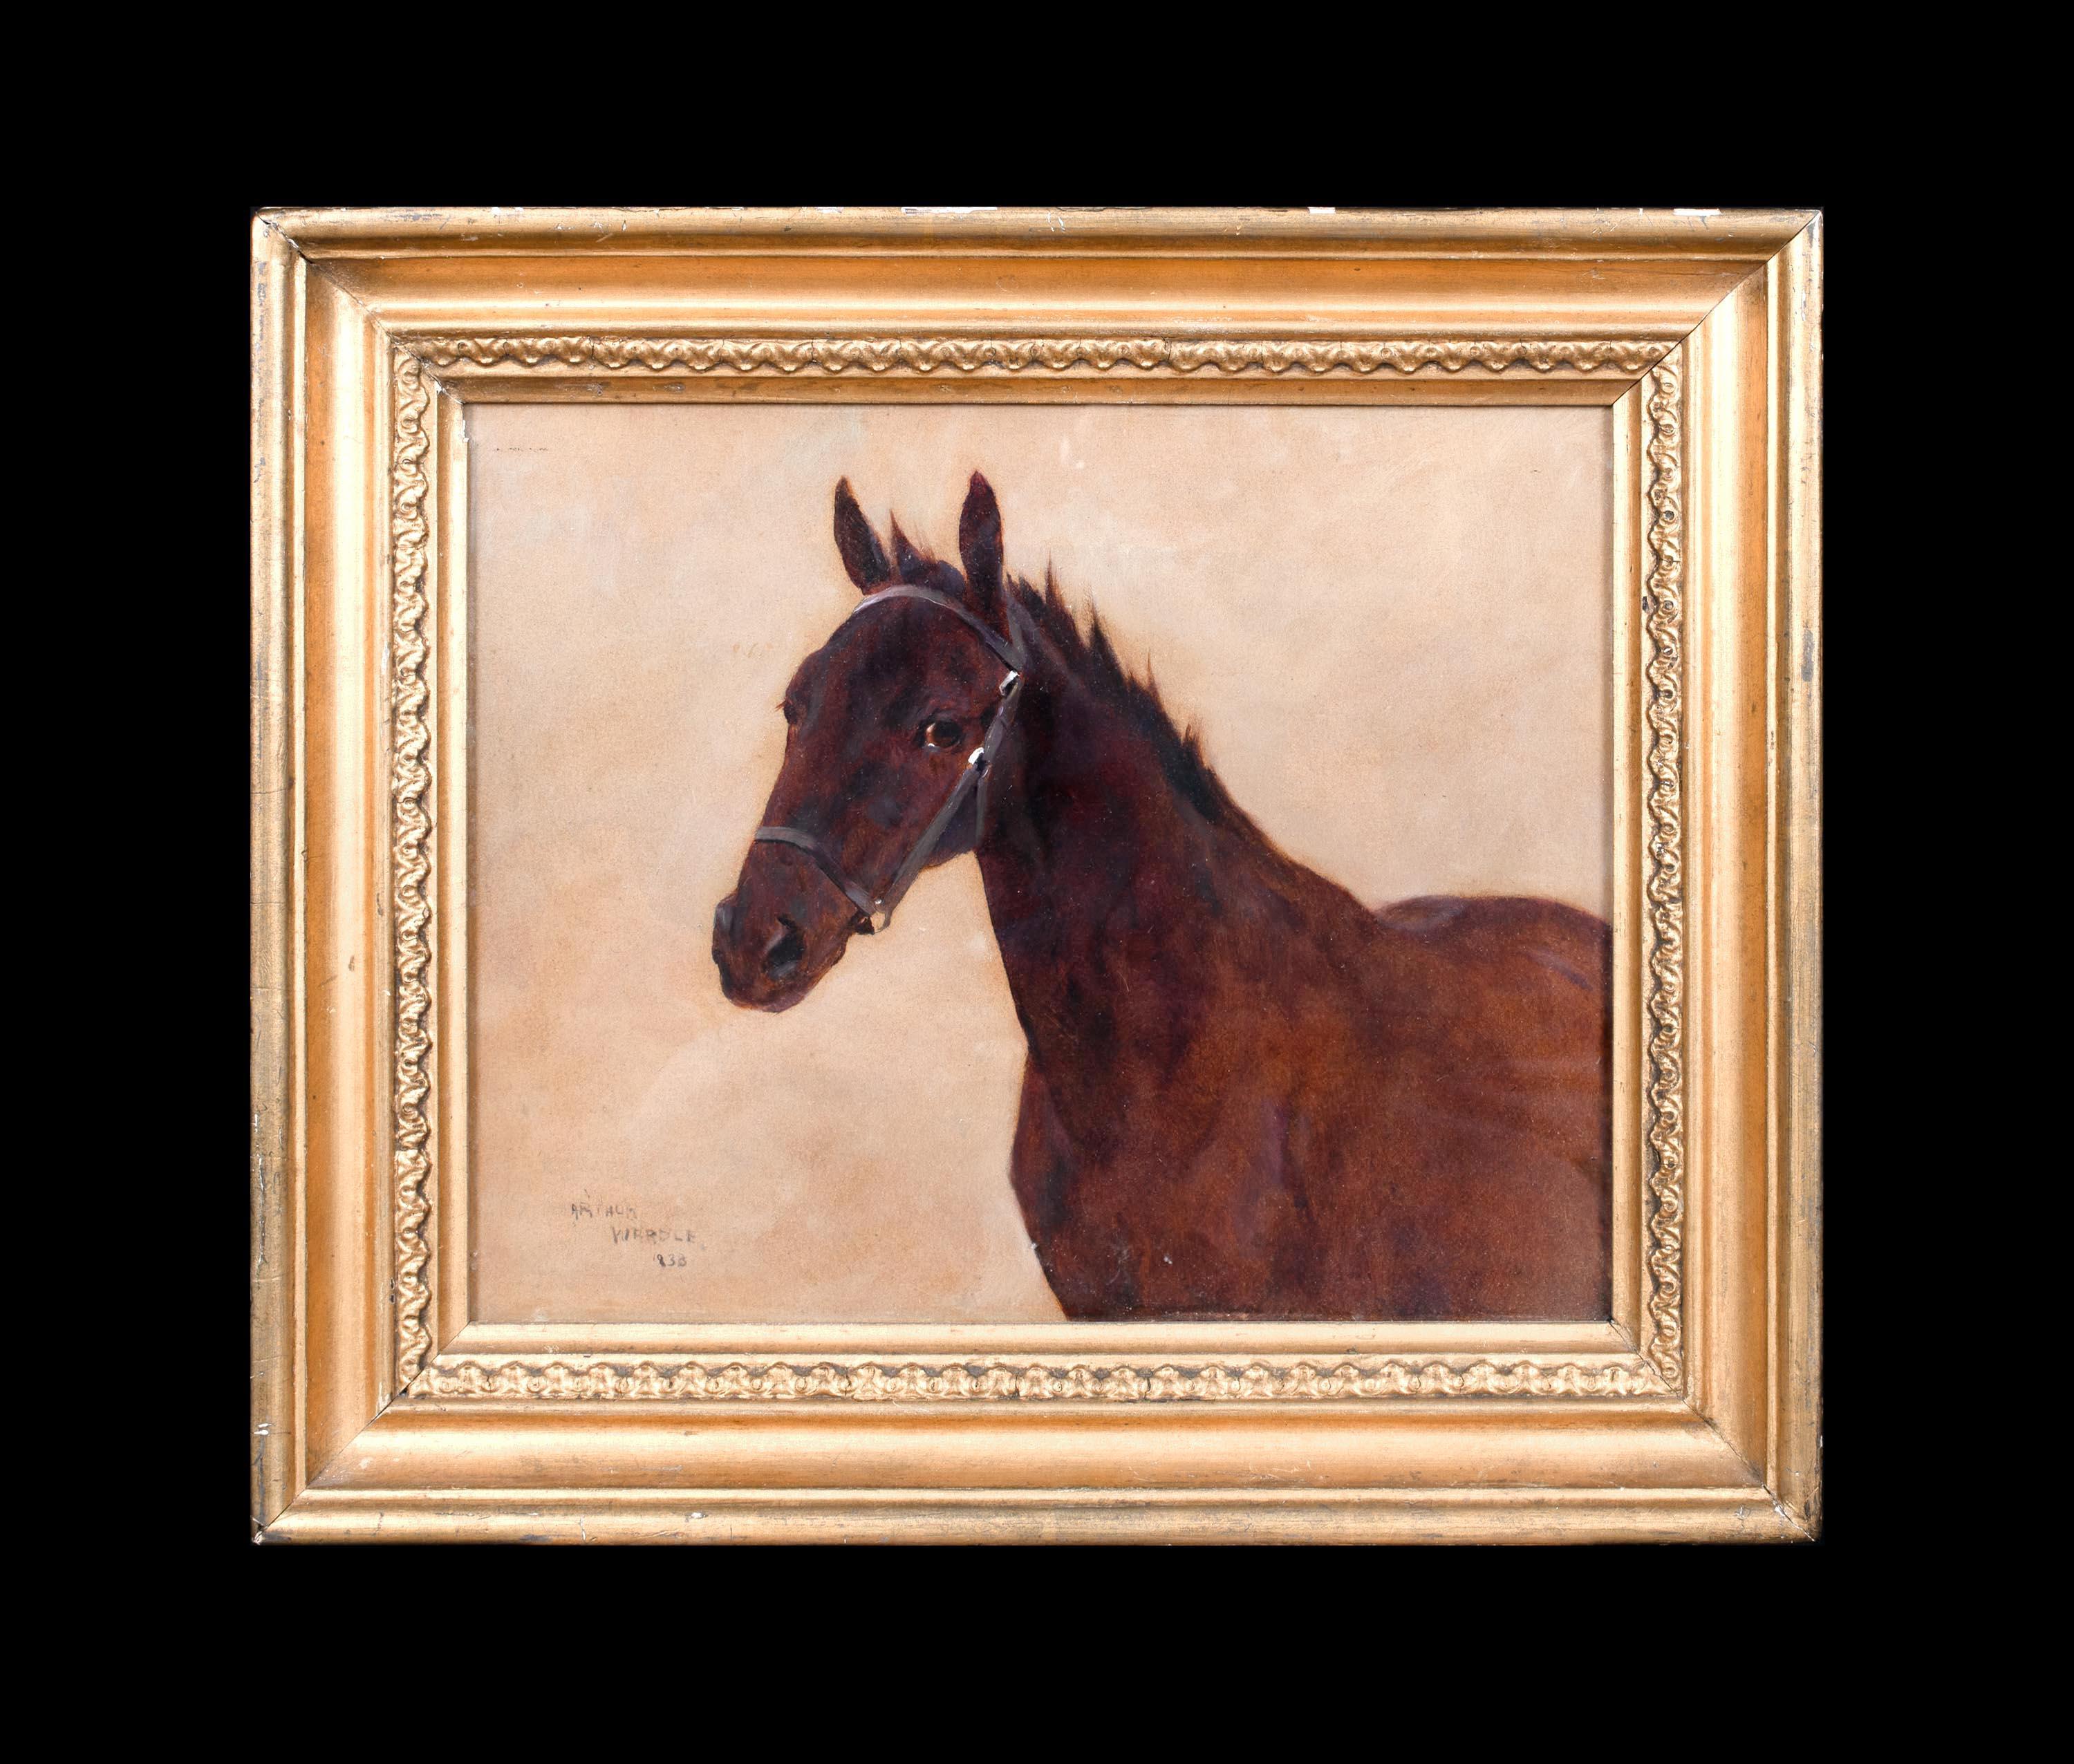 Portrait d'un cheval, 19e siècle  par Arthur WARDLE (1864-1949)   - Painting de Arthur Wardle